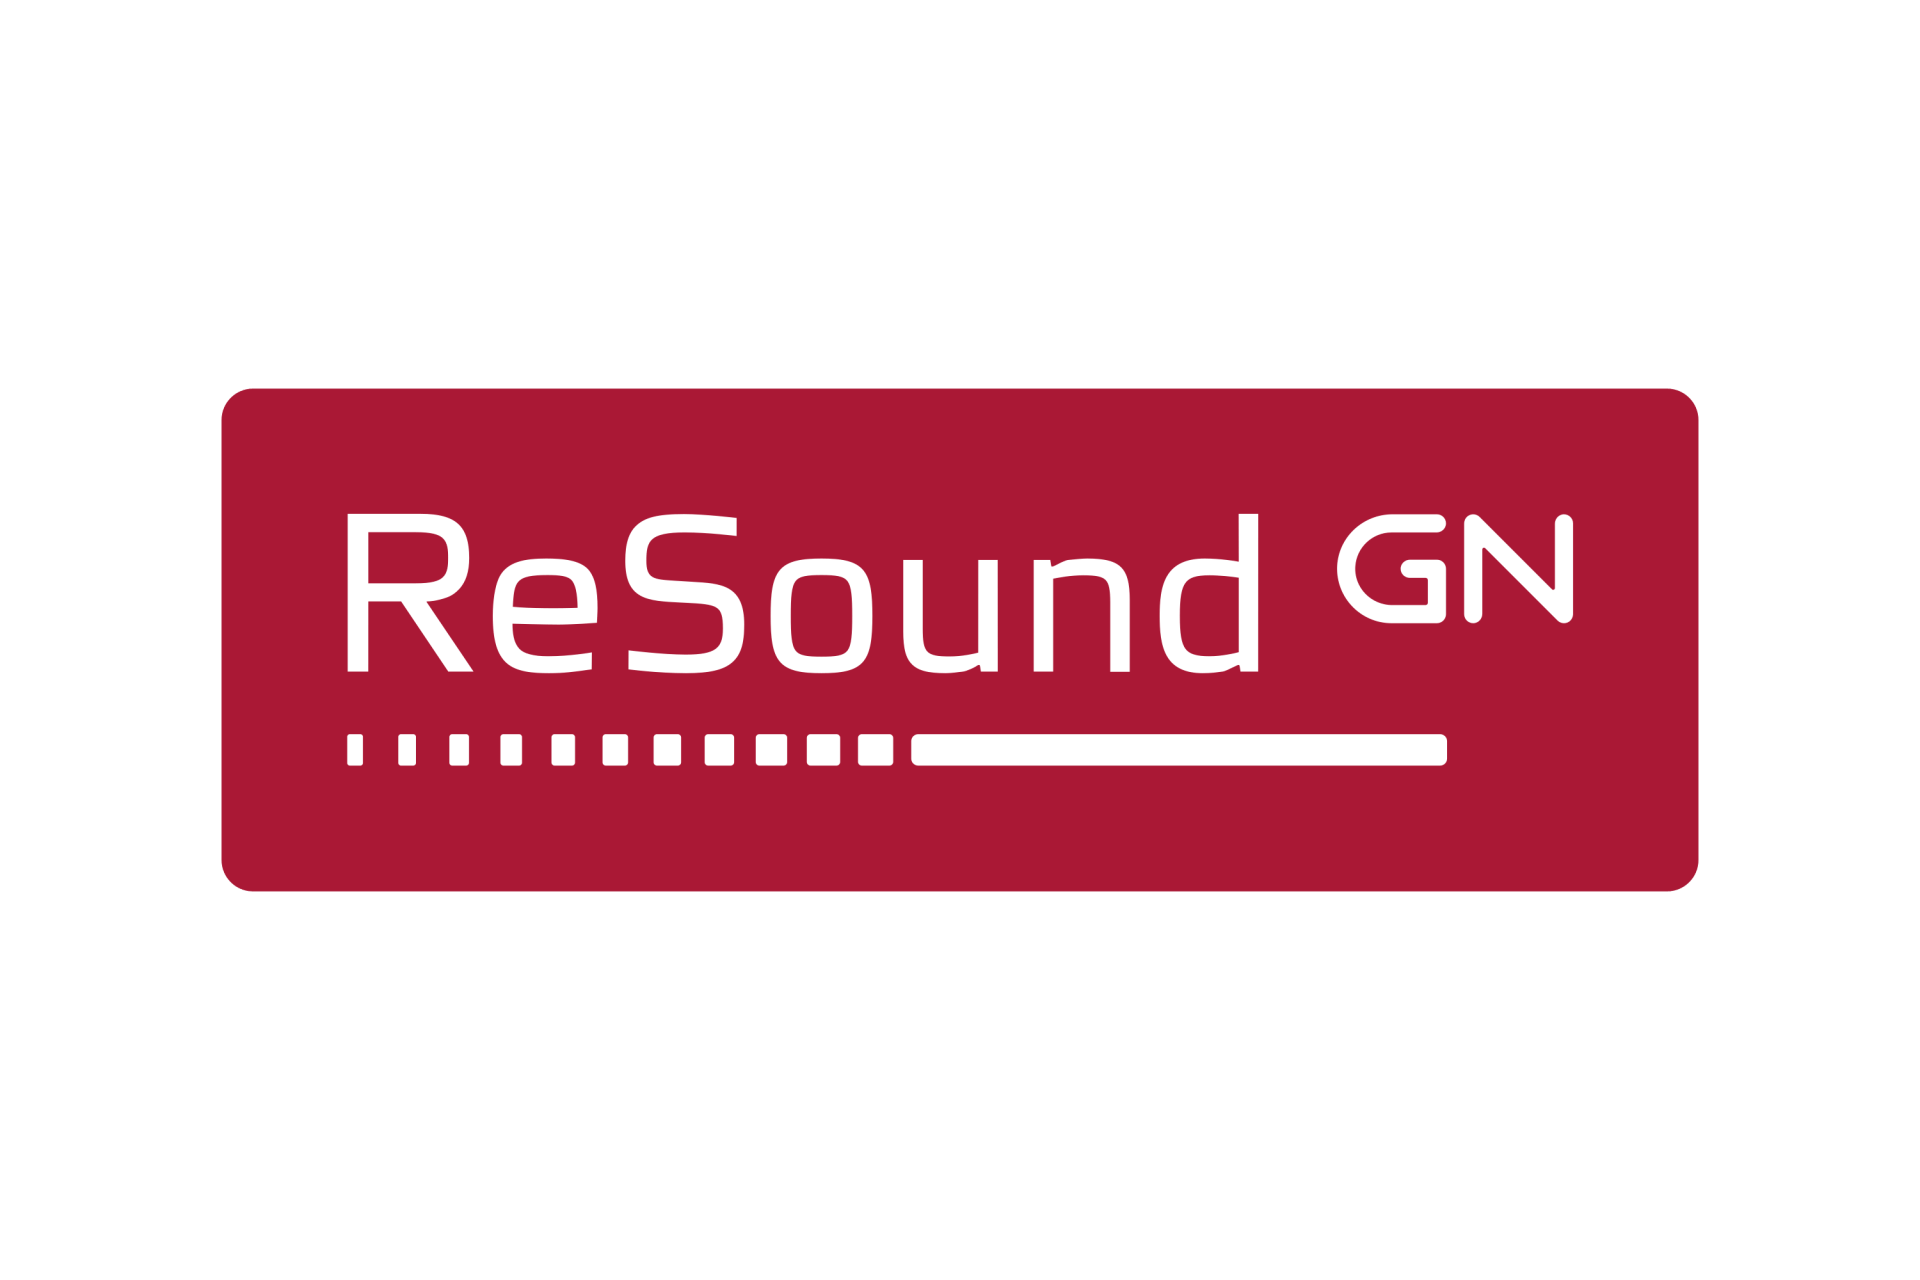 Logo de la marque ReSound